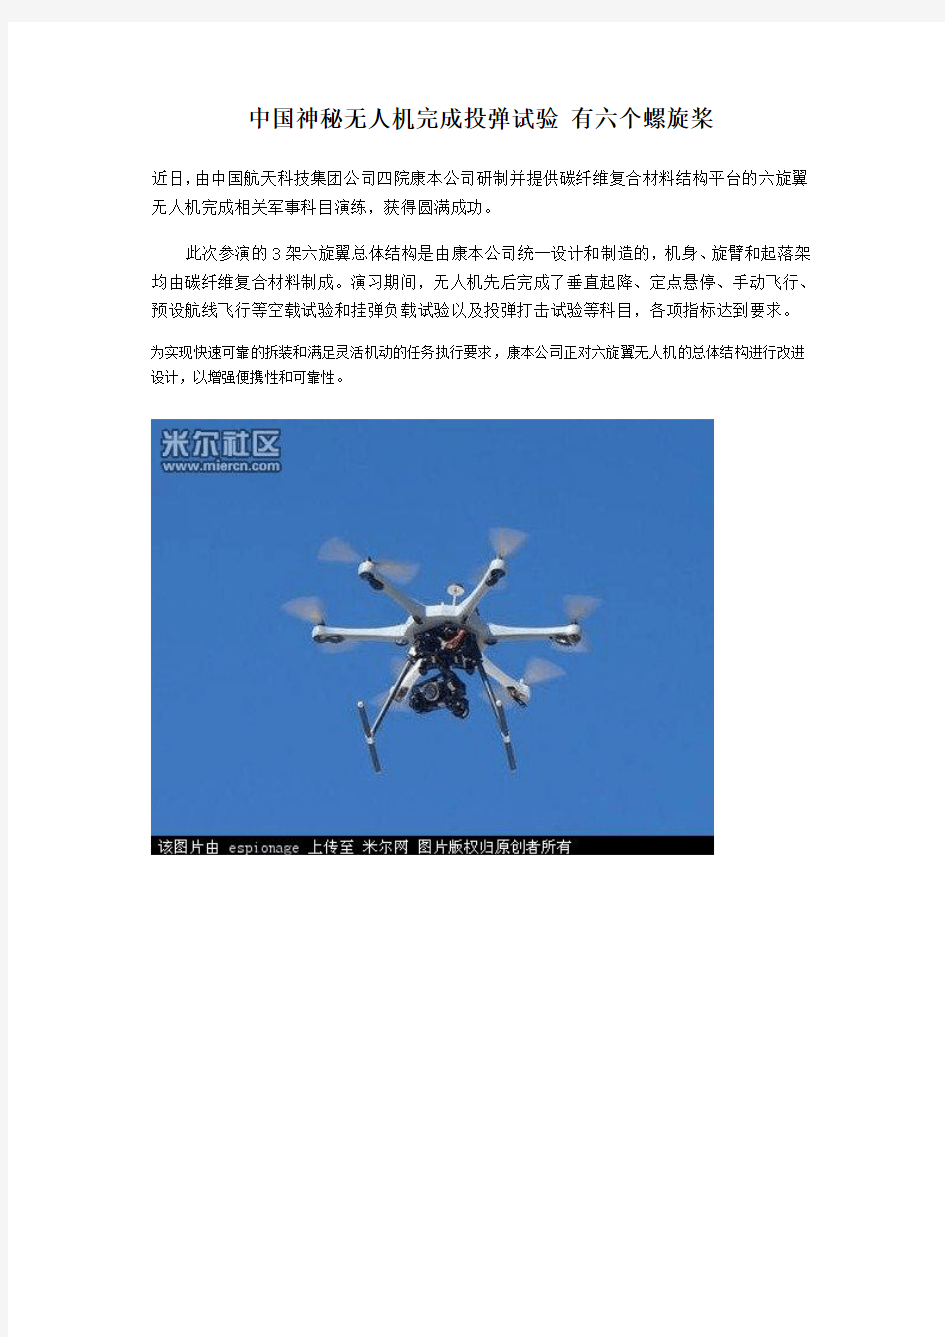 中国六个螺旋桨无人机完成投弹试验